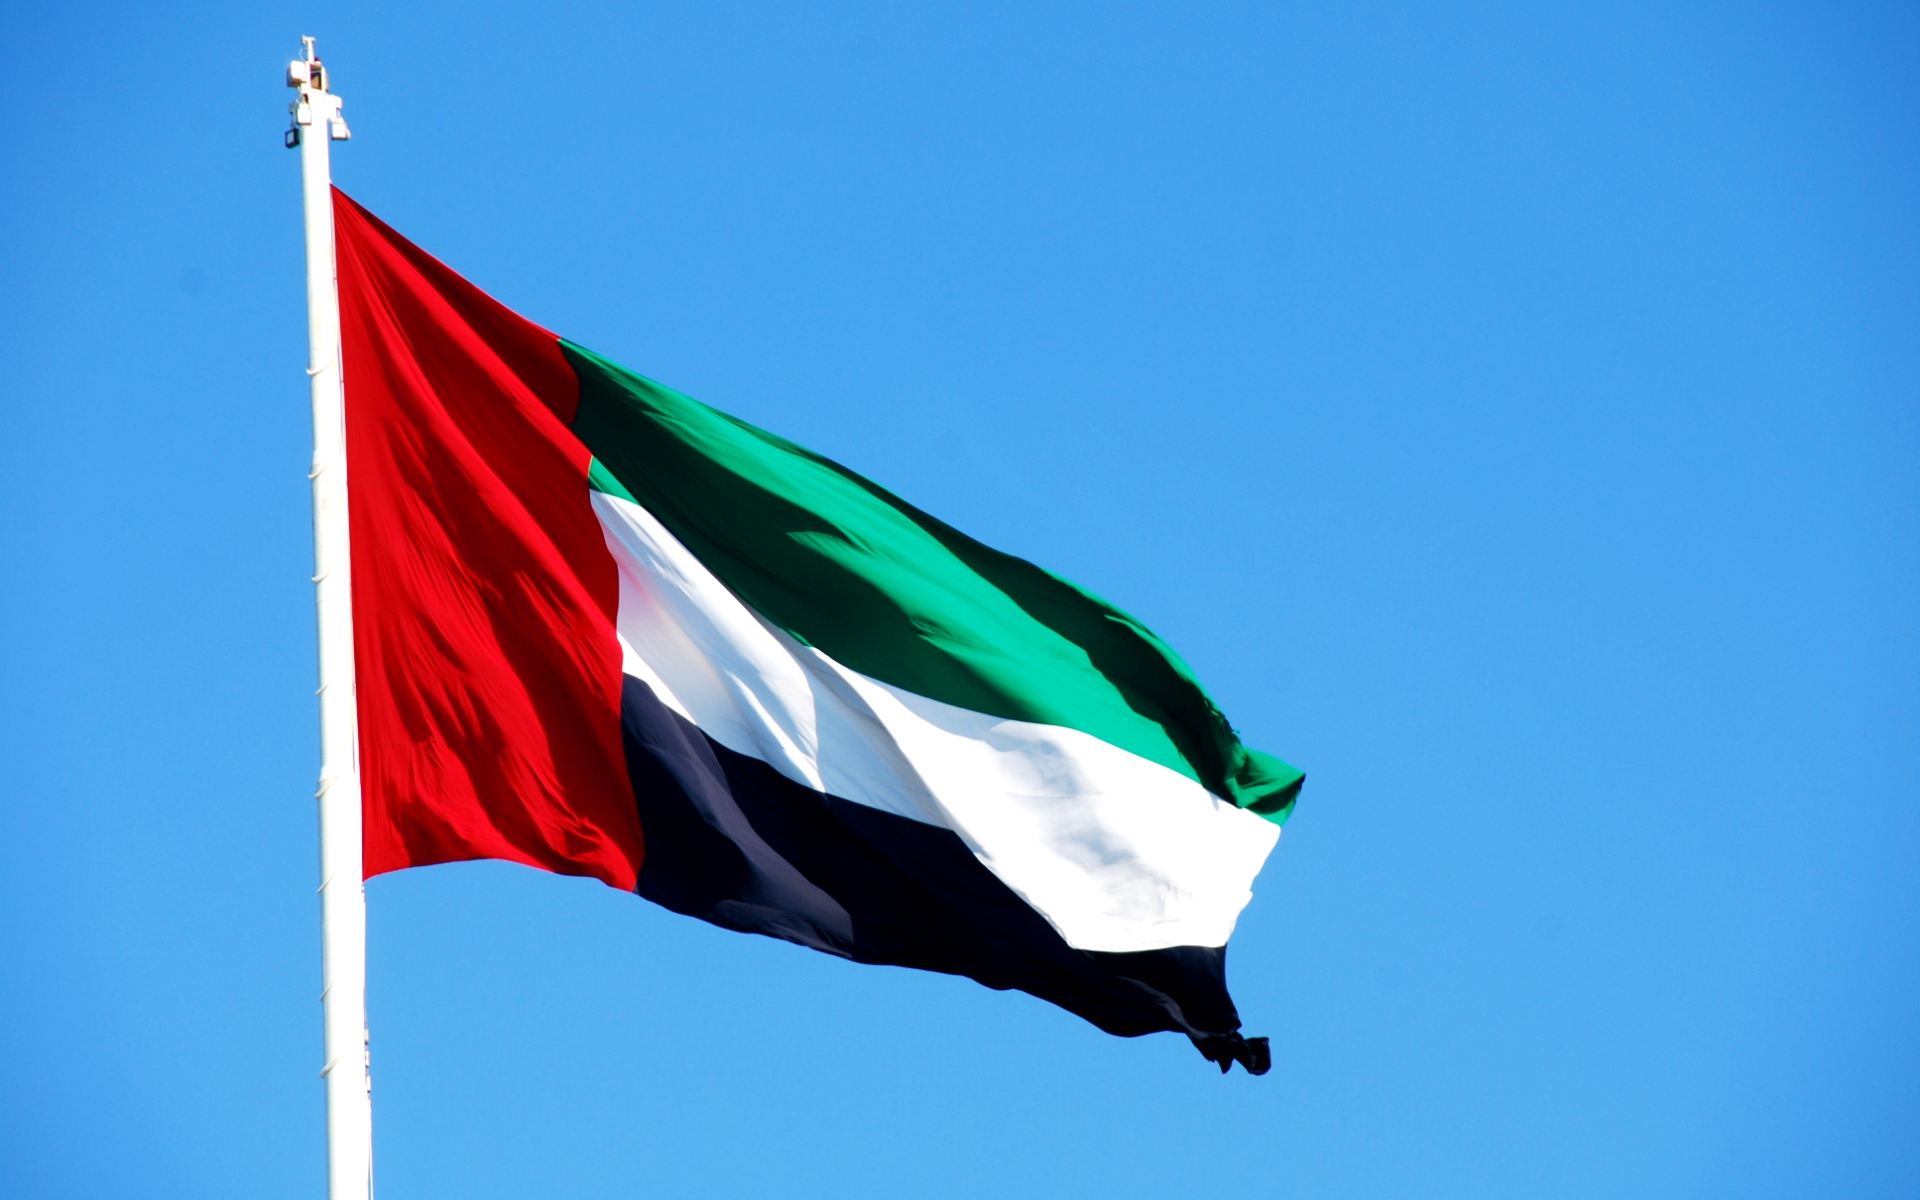 ОАЭ недовольны своей квотой ОПЕК+, обдумывает выход из соглашения – СМИ  